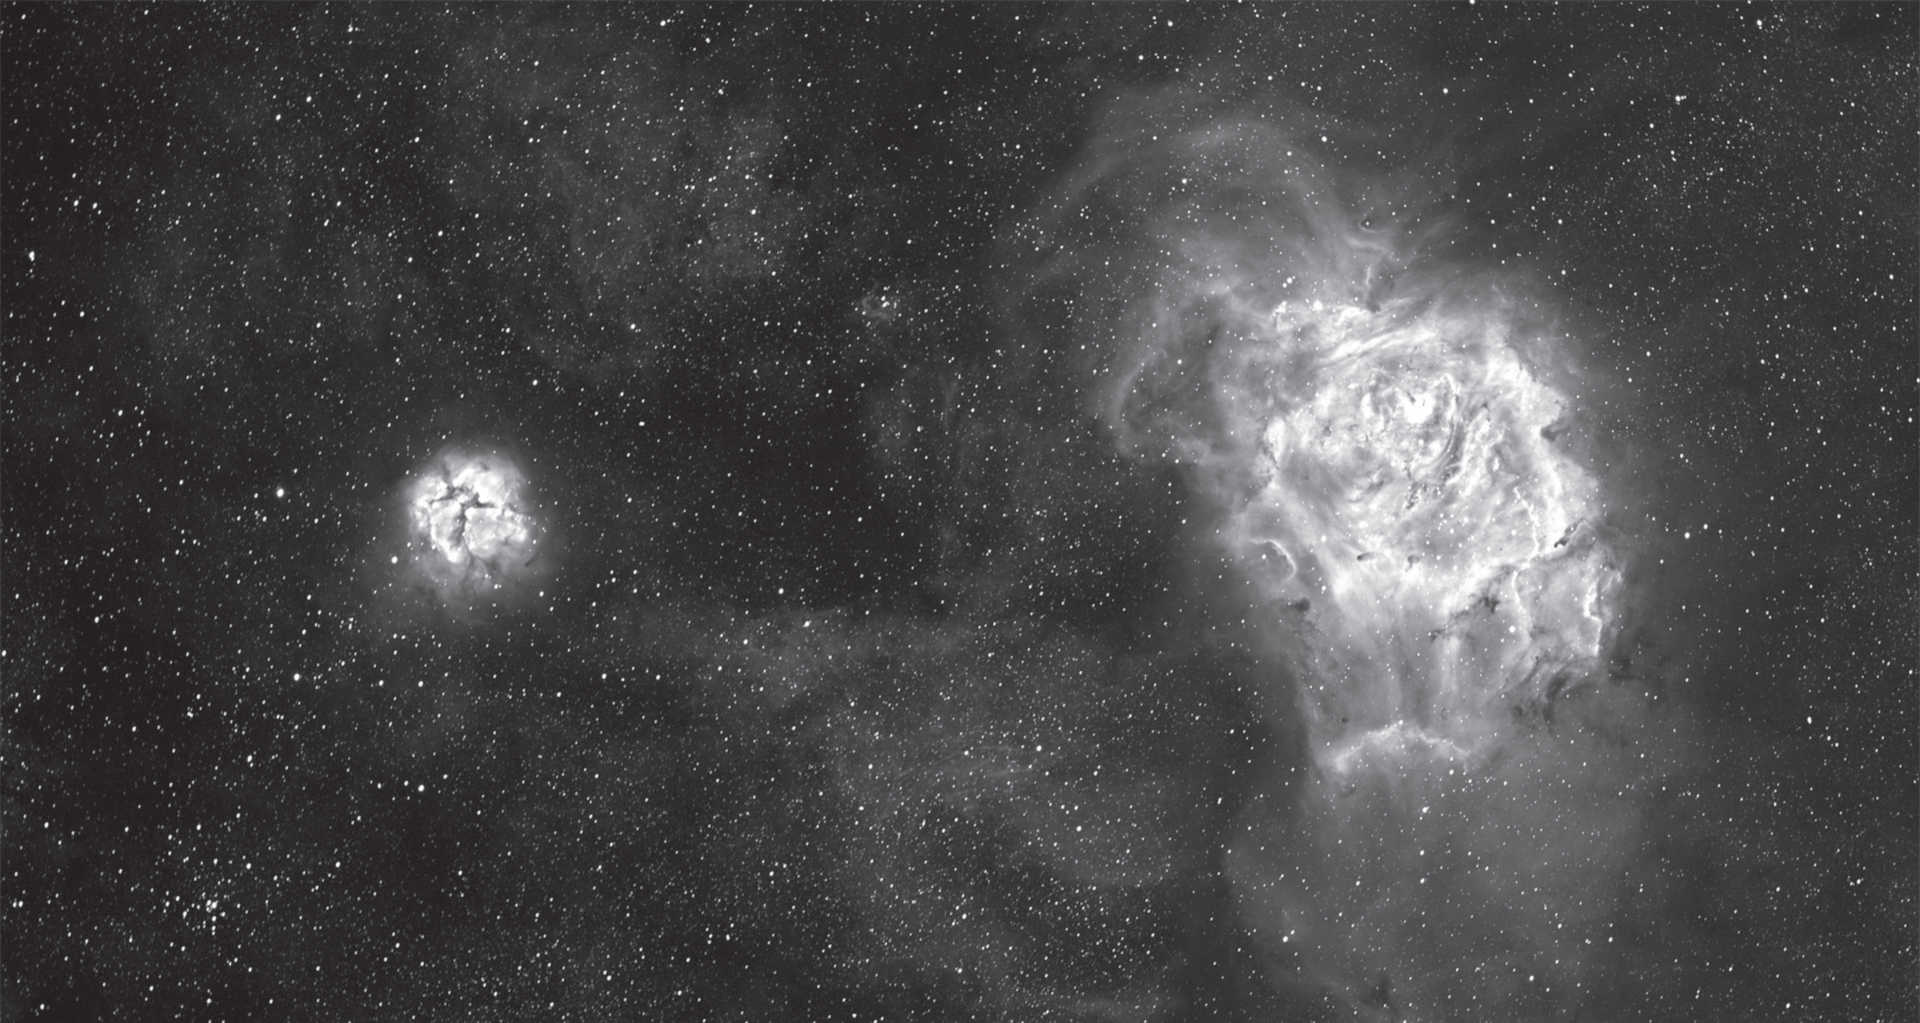 Lagunnebulosan och Trifidnebulosan (M 8 och M 20) i stjärnbilden Skytten. Summerad bild från sex exponeringar om en minut vardera, sex exponeringar om femton minuter vardera och två exponeringar om sextio minuter vardera. Kamera: SBIG STF-8300, Hα-filter med 35 nm passbandbredd, Teleskop: 130 mm refraktor med 1 000 mm brännvidd. U. Dittler